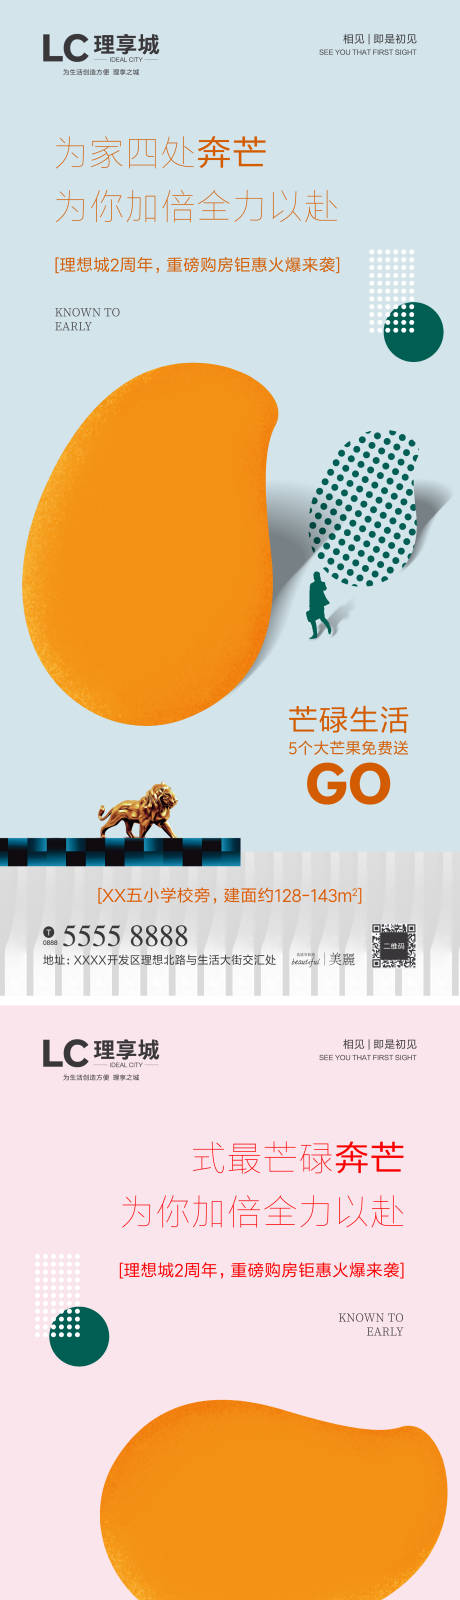 地产送芒果暖场系列海报